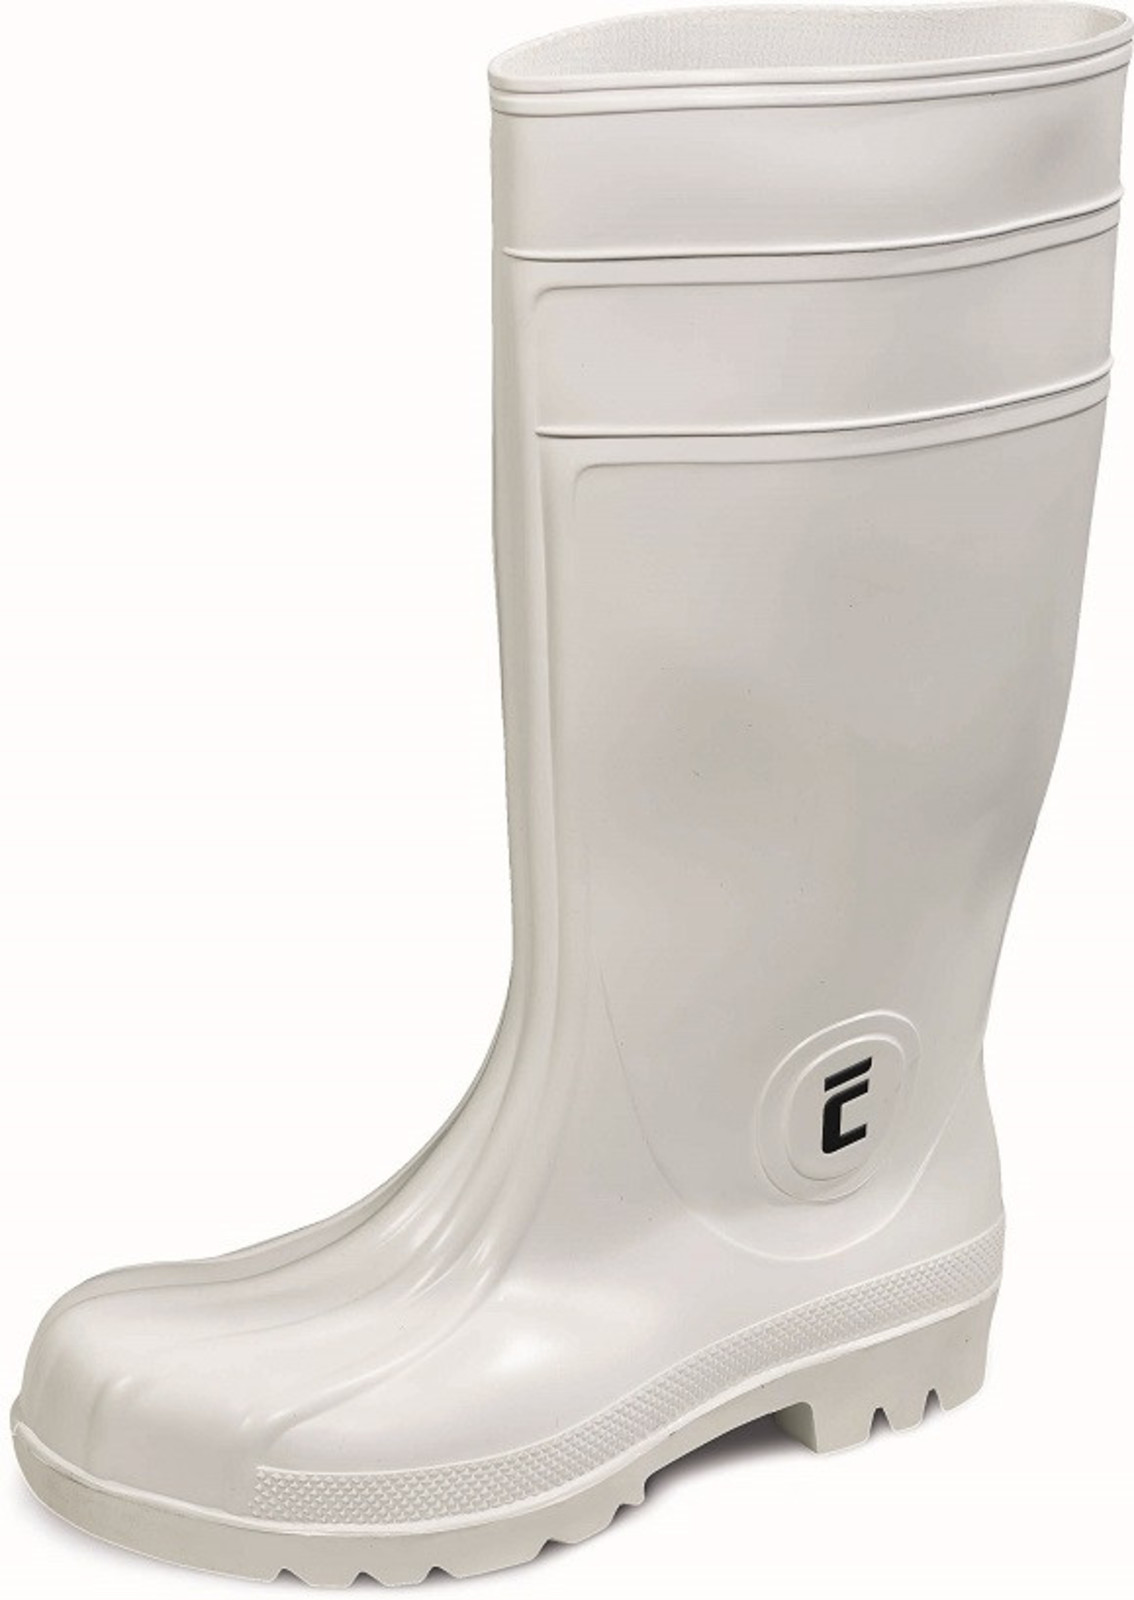 Bezpečnostné gumáky Eurofort S4 - veľkosť: 40, farba: biela